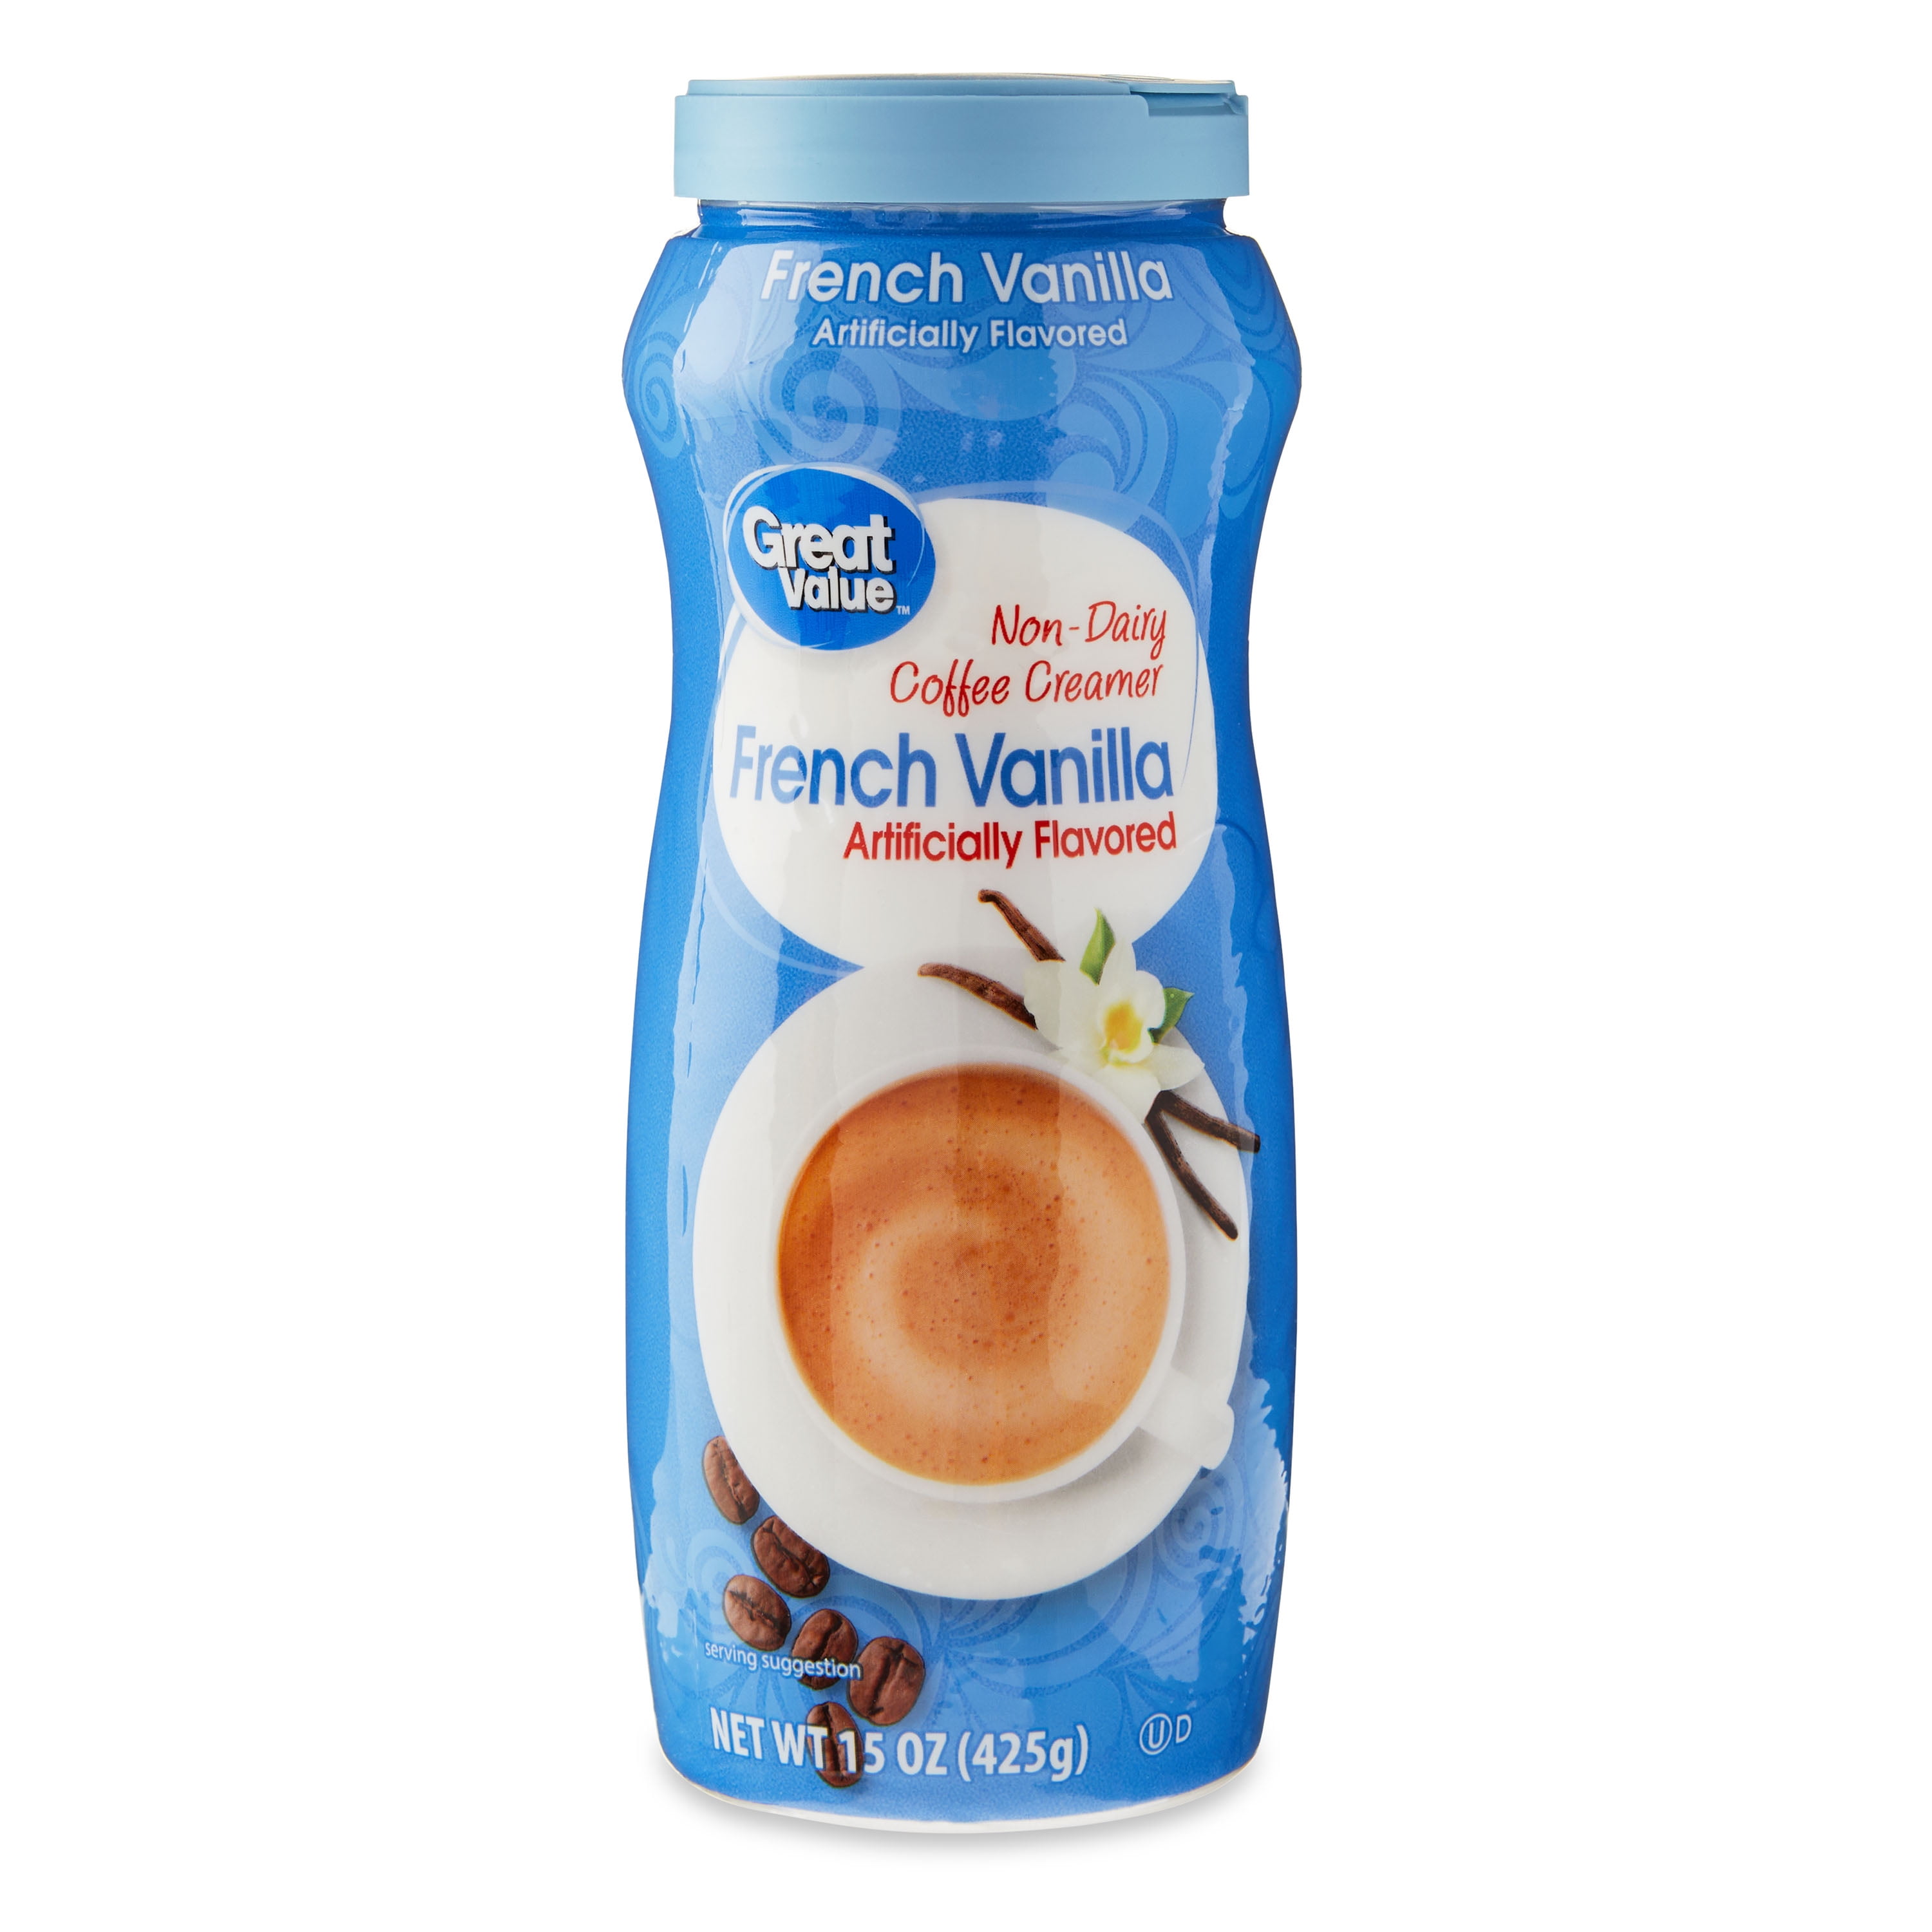 Great Value French Vanilla Non-Dairy Coffee Creamer, 15 oz